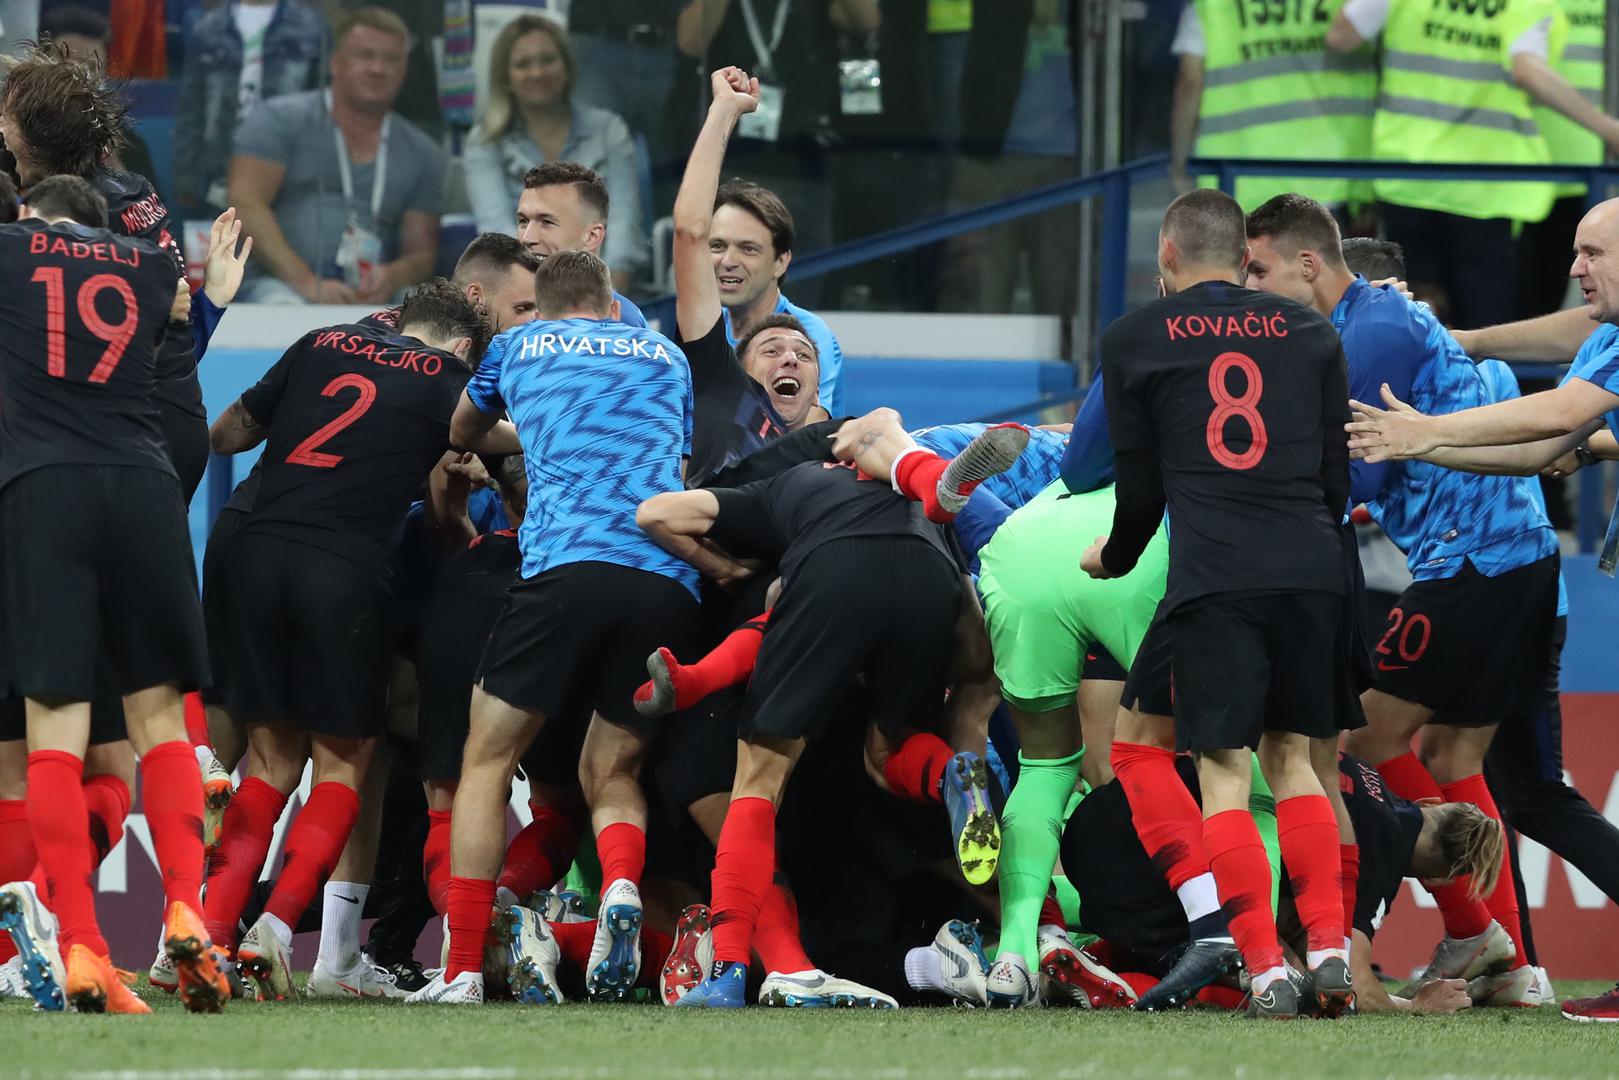 Hrvatska je u četvrtfinalu Svjetskog prvenstva. Nakon lutrije jedanaesteraca s 4:3 pobijedili smo Dansku.

